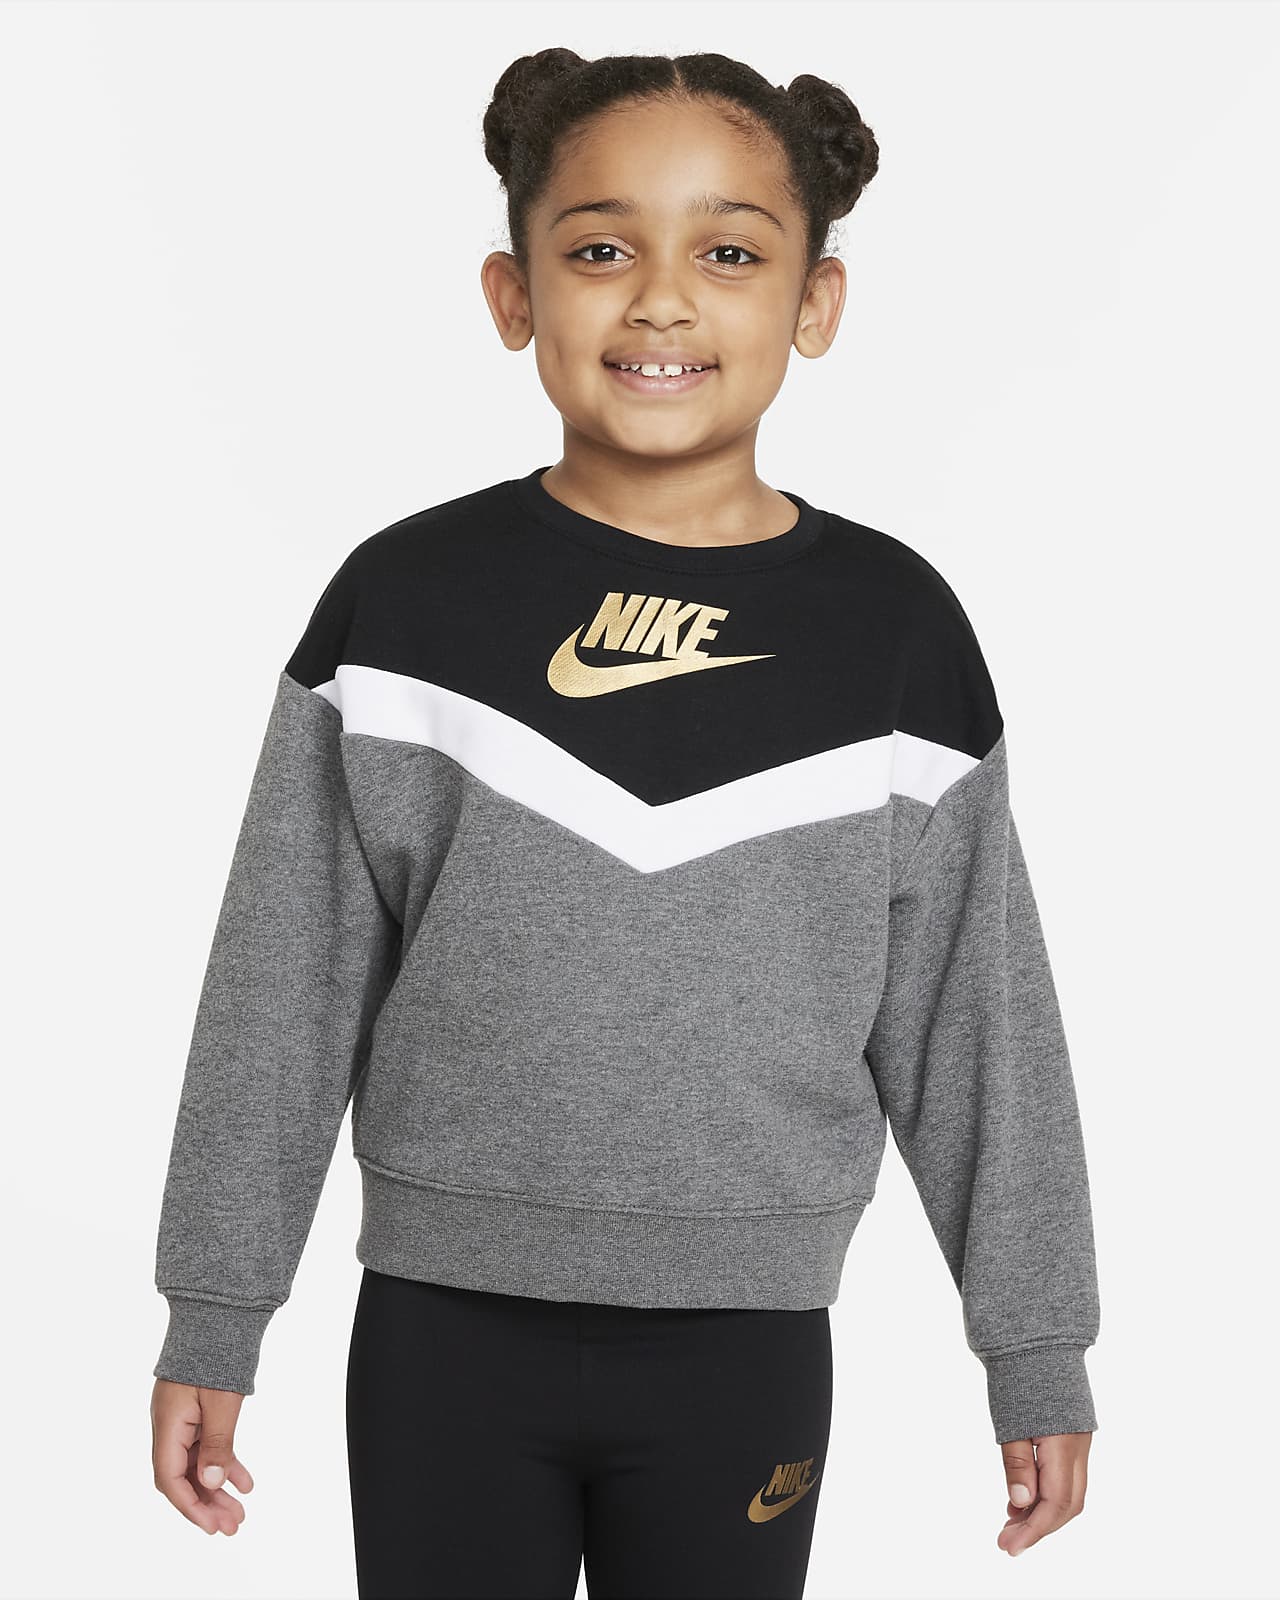 Nike Little Kids' Crew